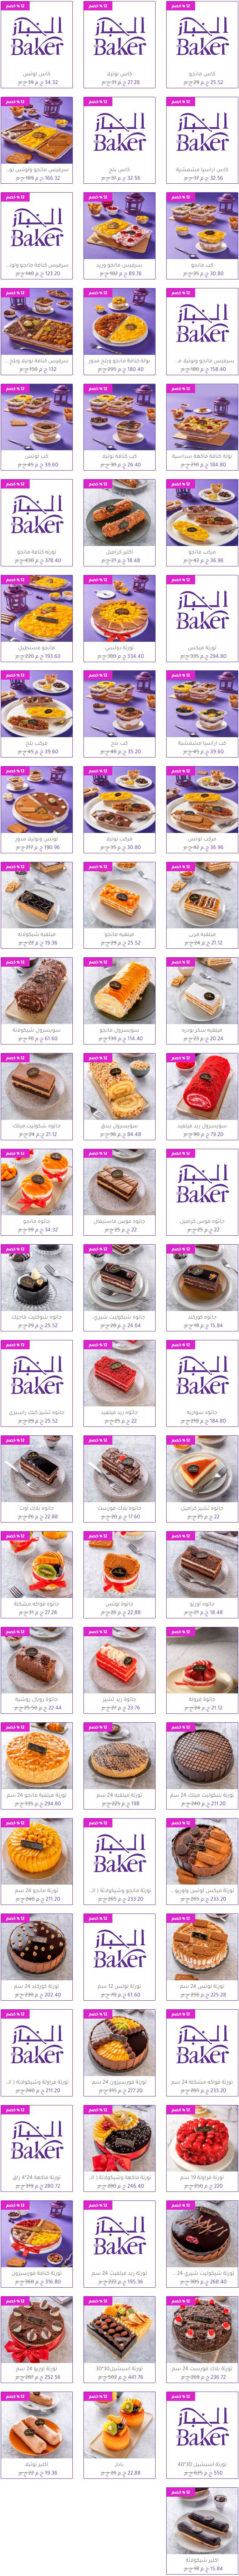 منيو وفروع حلواني «الخباز» في مصر , رقم التوصيل والدليفري